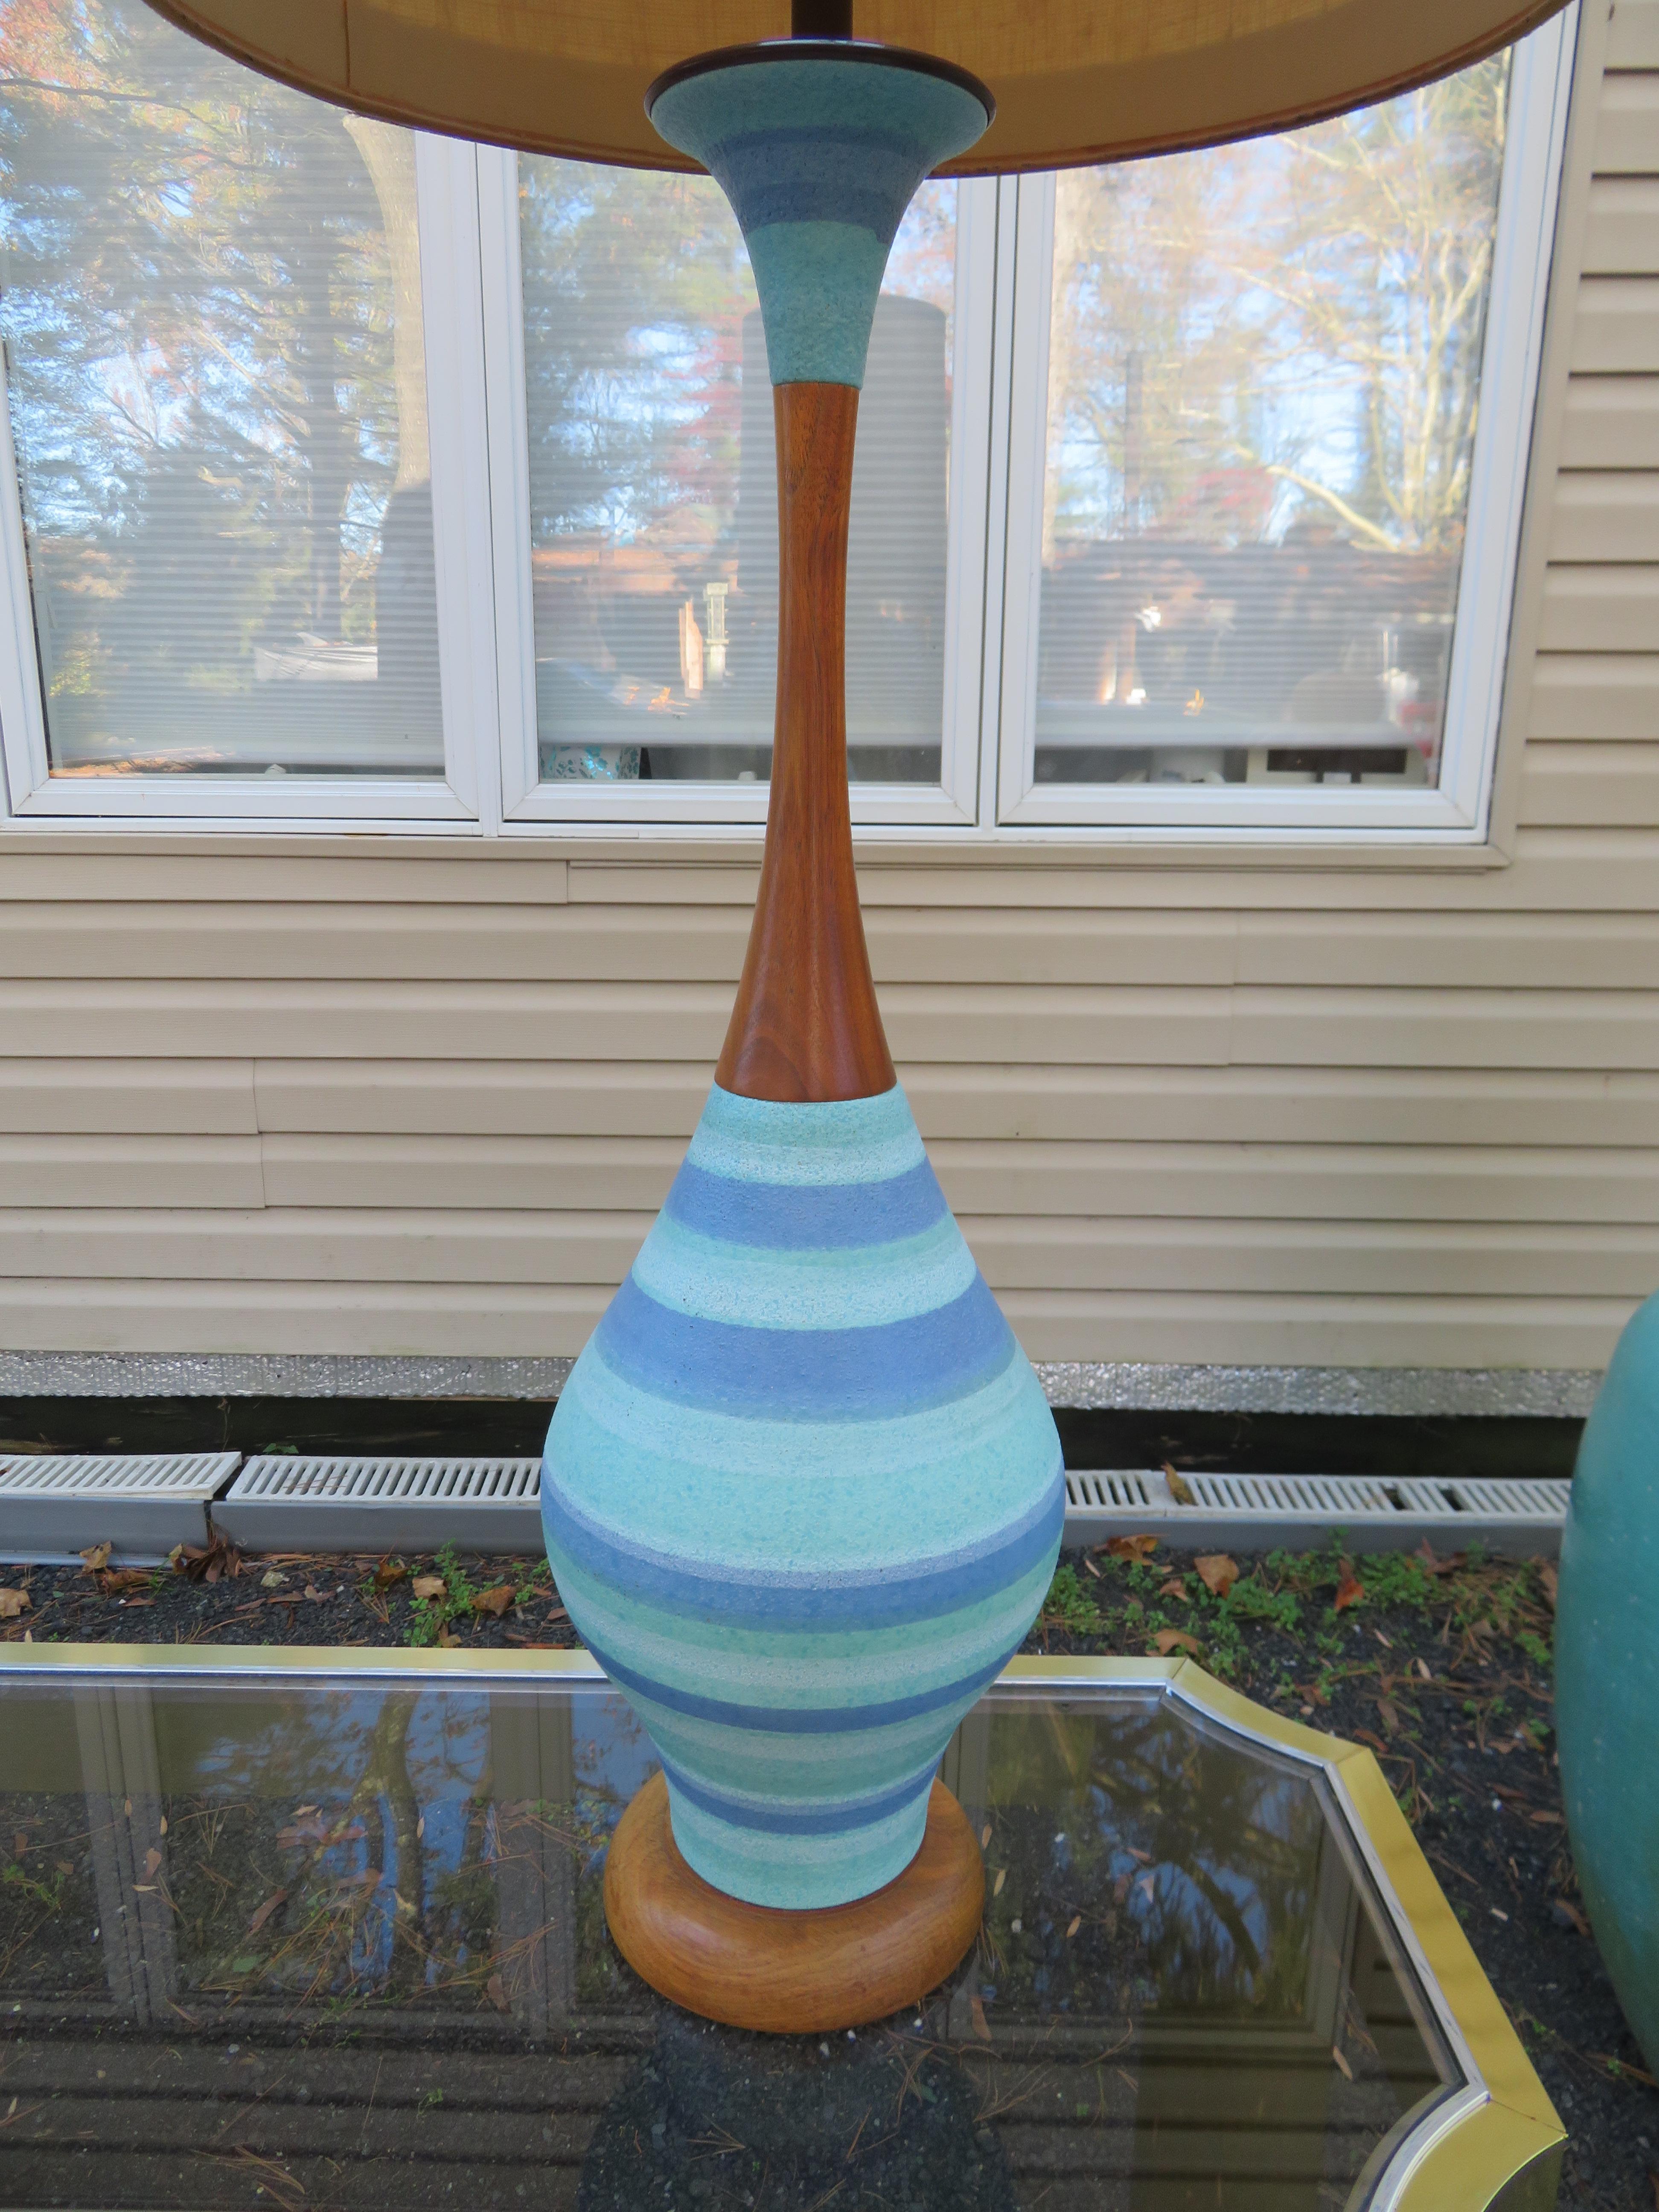 Fabuleuse grande lampe de table rayée bleue et turquoise avec son abat-jour tambour d'origine. La lampe conserve son câblage d'origine en état de marche. Nous adorons le col haut et fin en noyer avec le dessus évasé en céramique assorti. Cette lampe